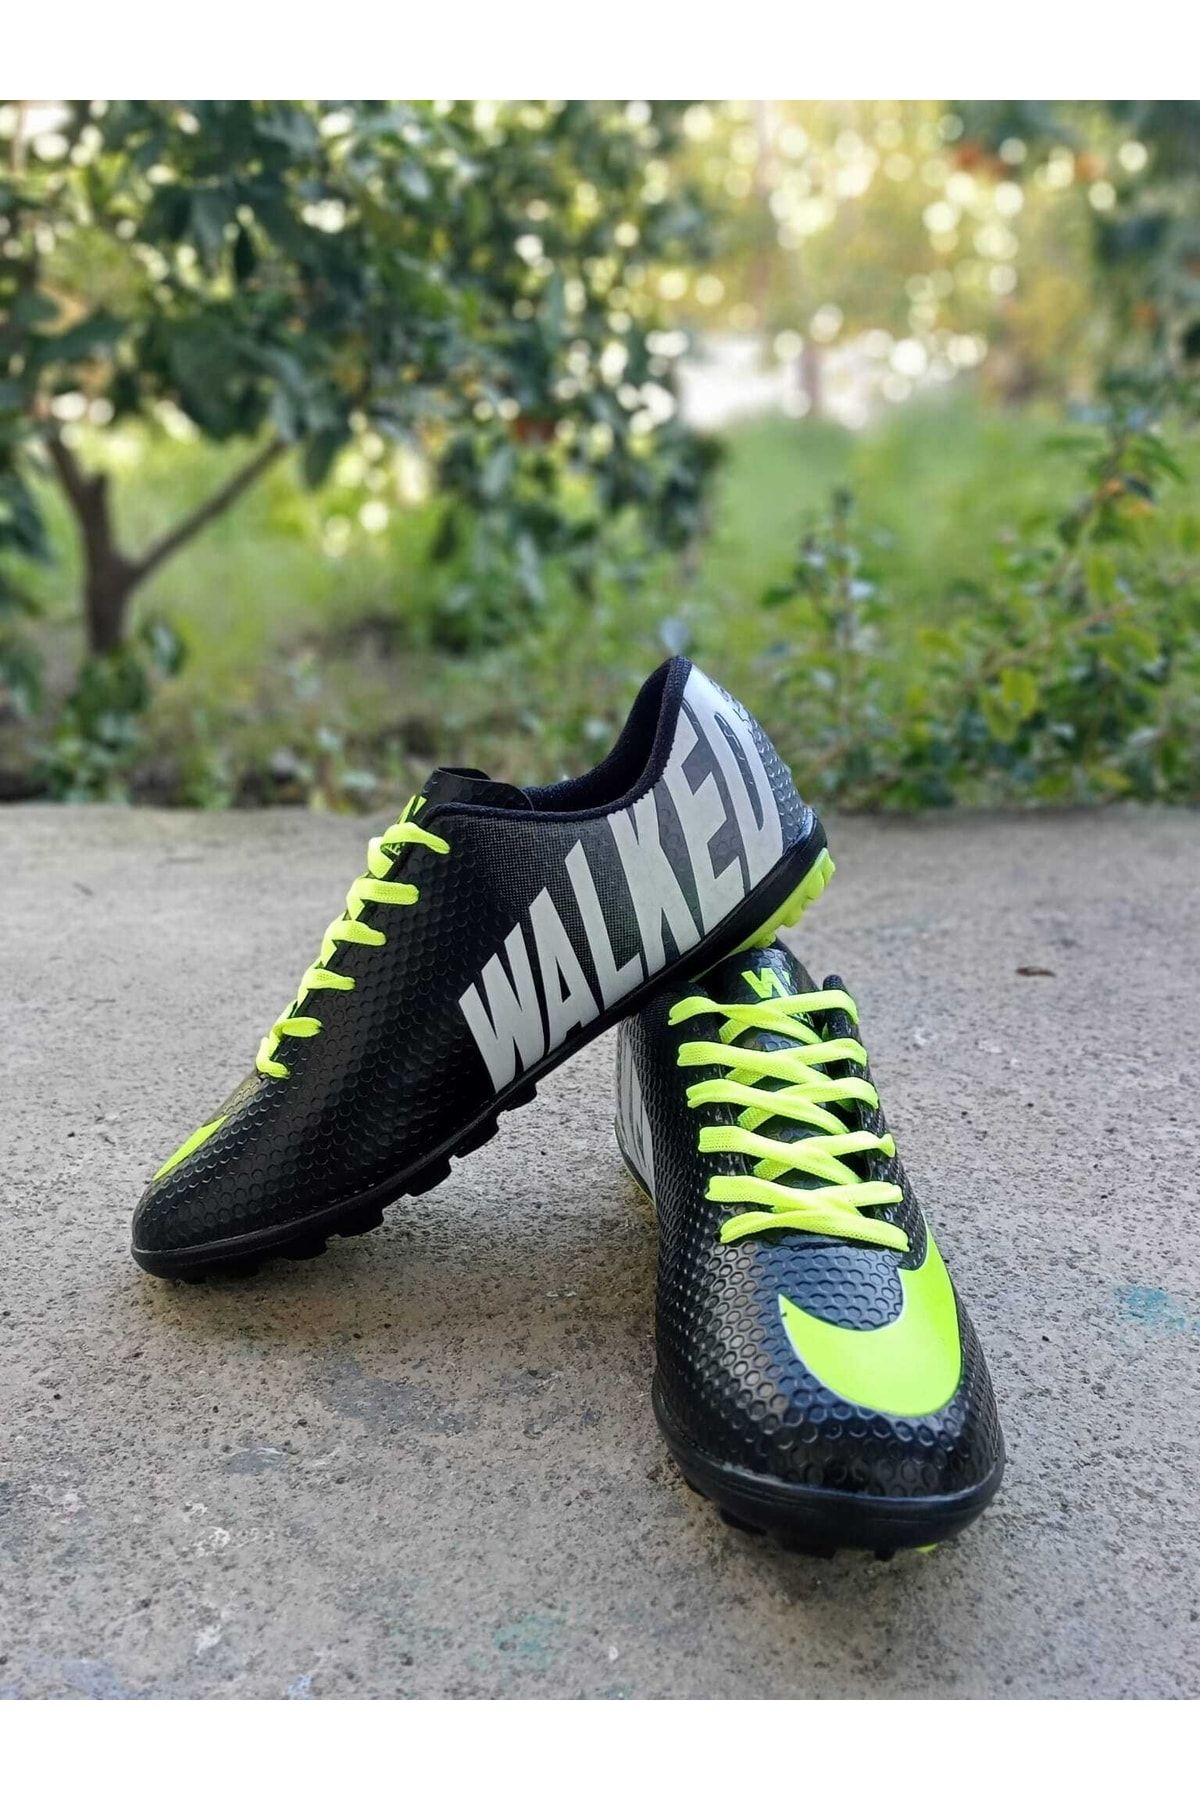 orkistore Siyah Sarı Halısaha Futbol Ayakkabısı